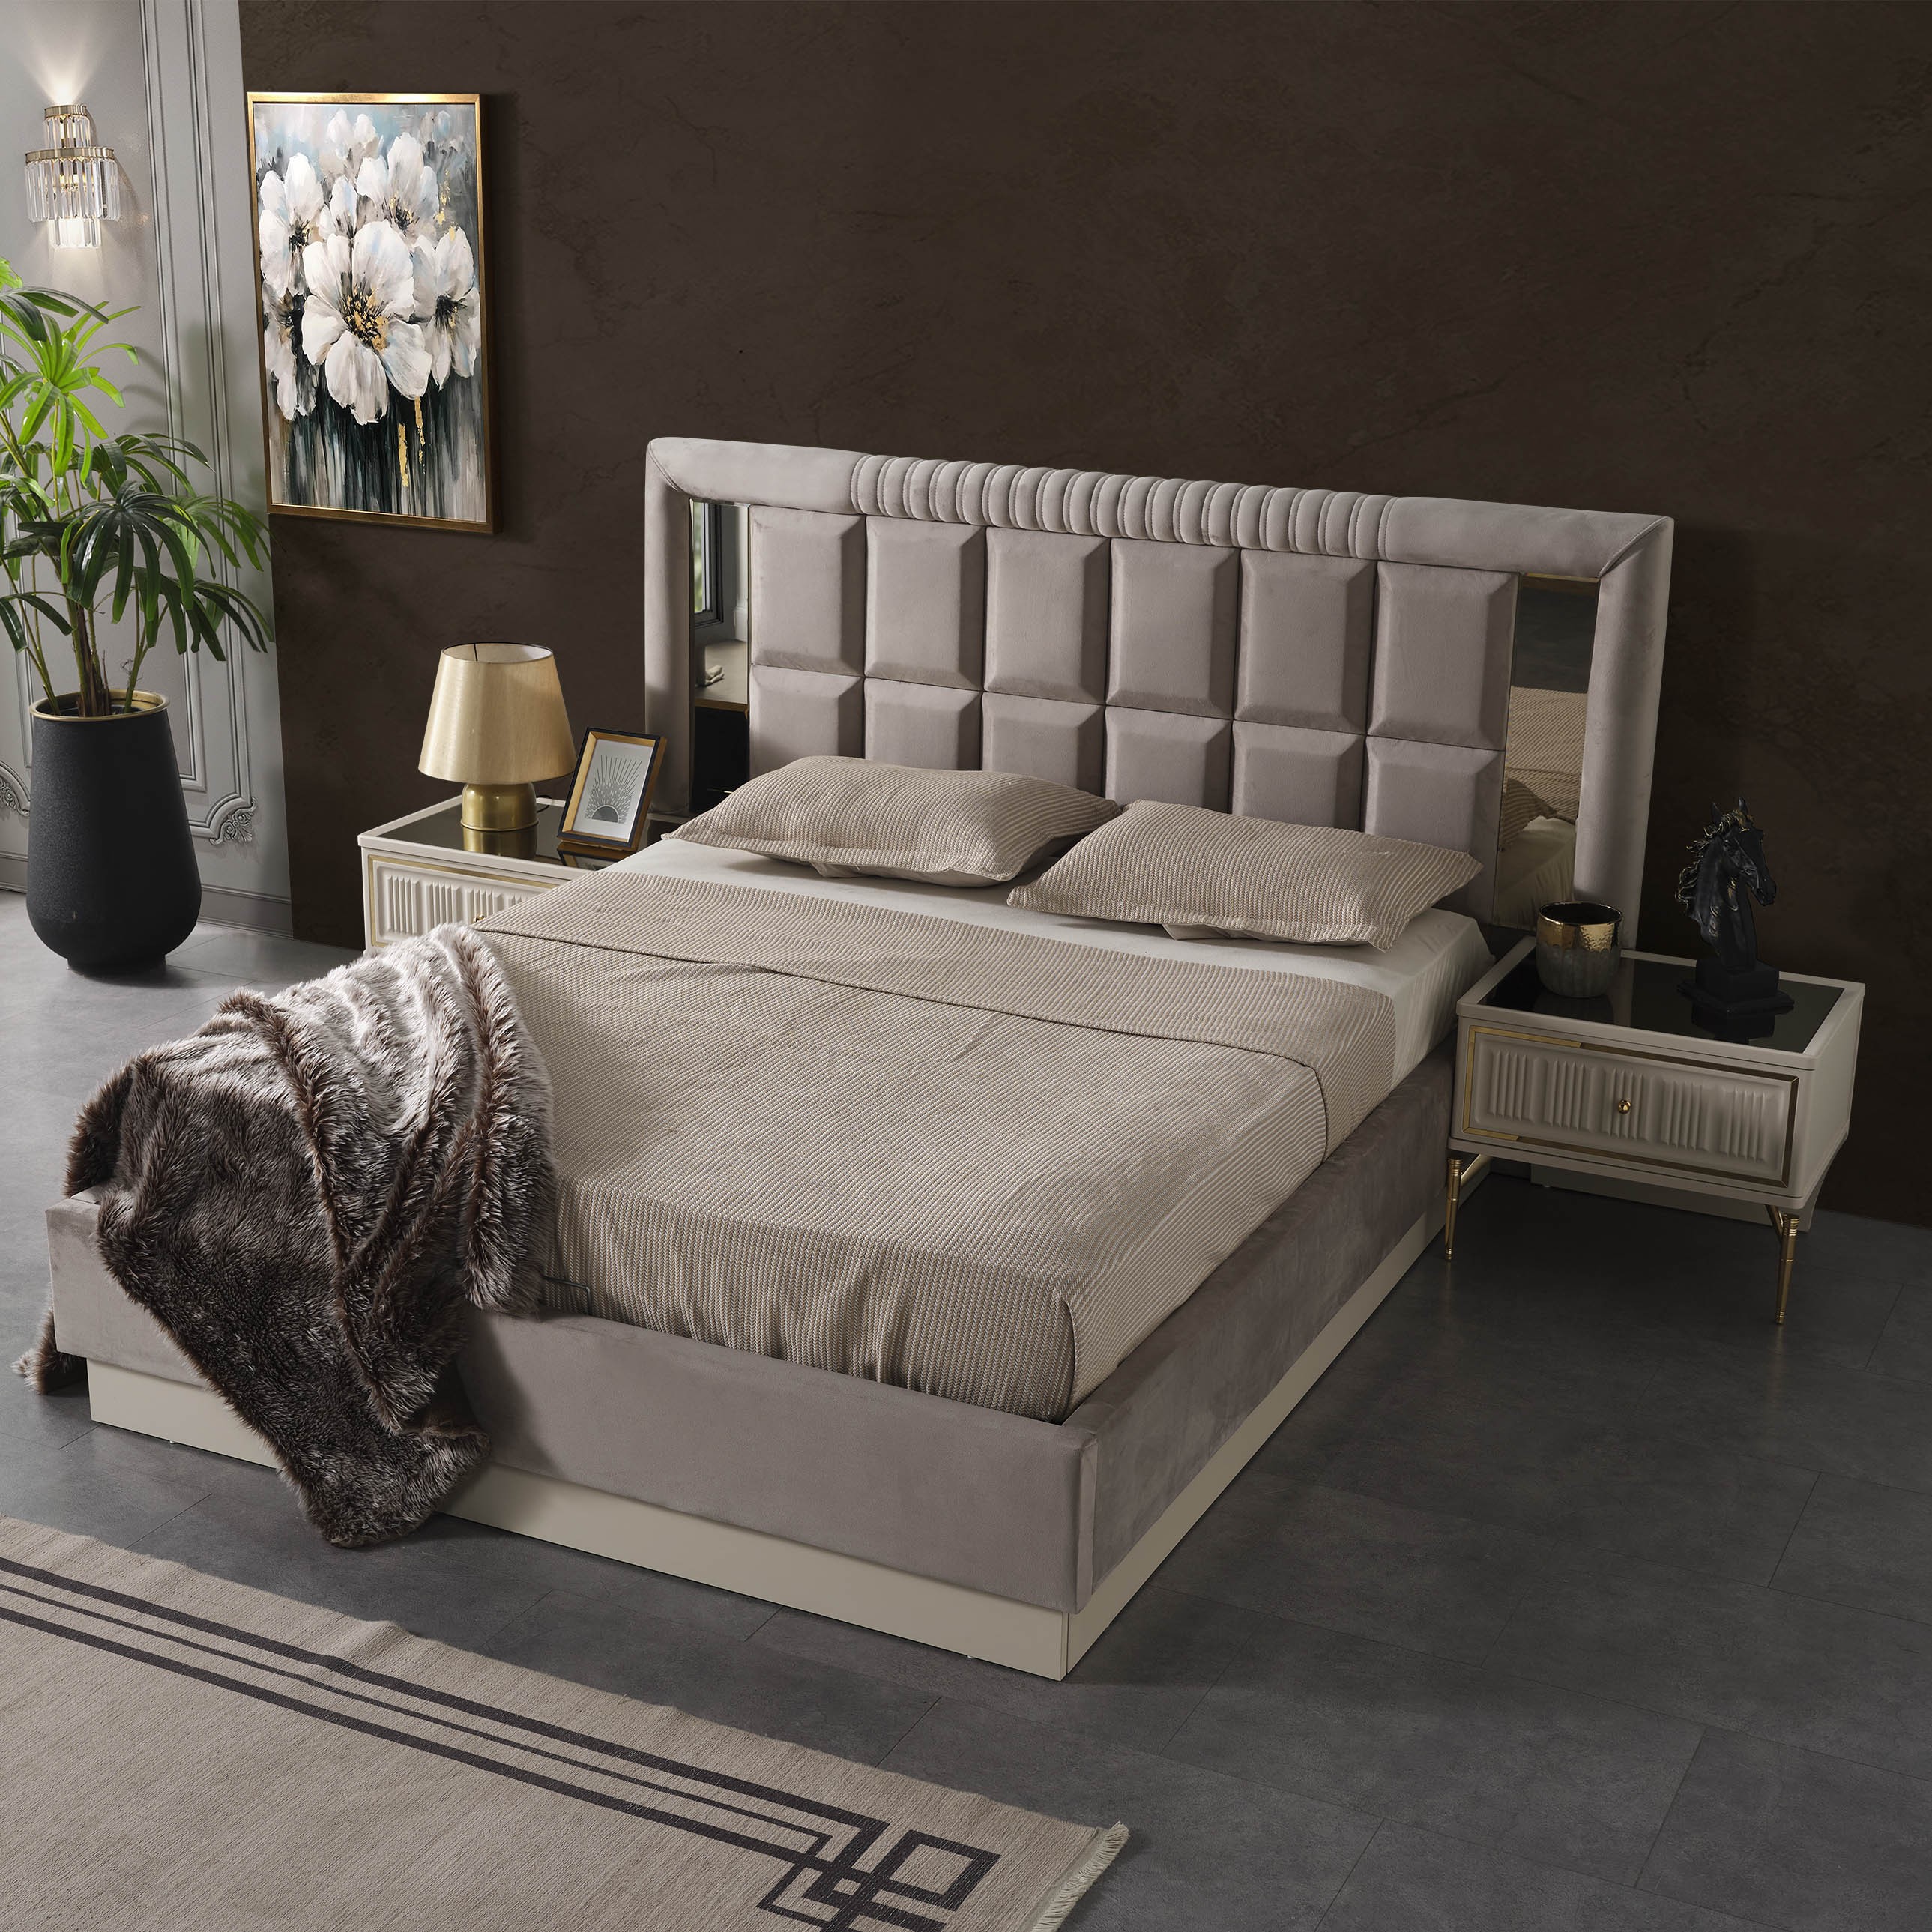 Anka Bed Without Storage 180x200 cm